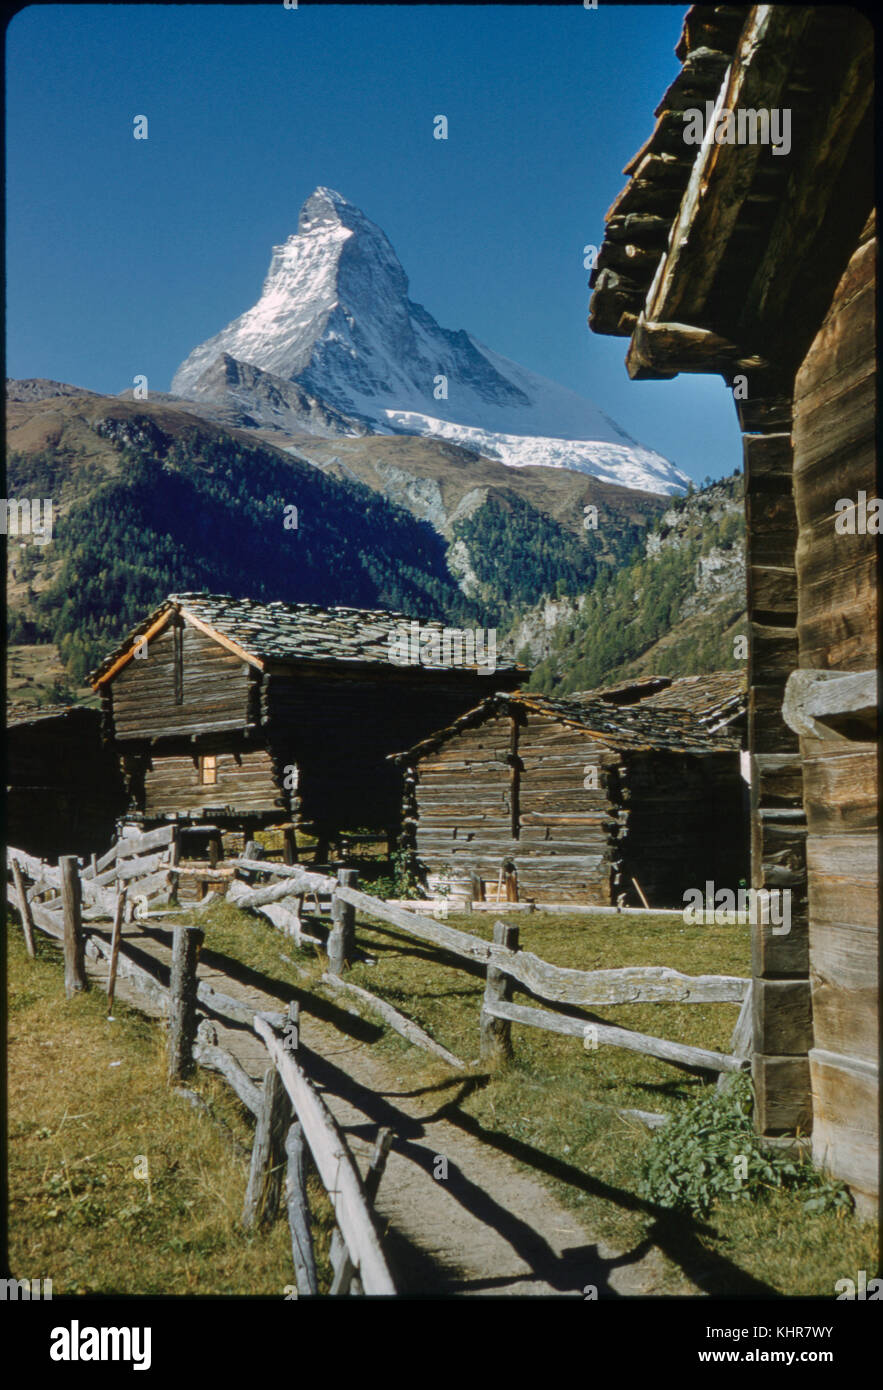 Chalets rustiques avec en arrière-plan le mont Cervin, Zermatt, Suisse, 1964 Banque D'Images